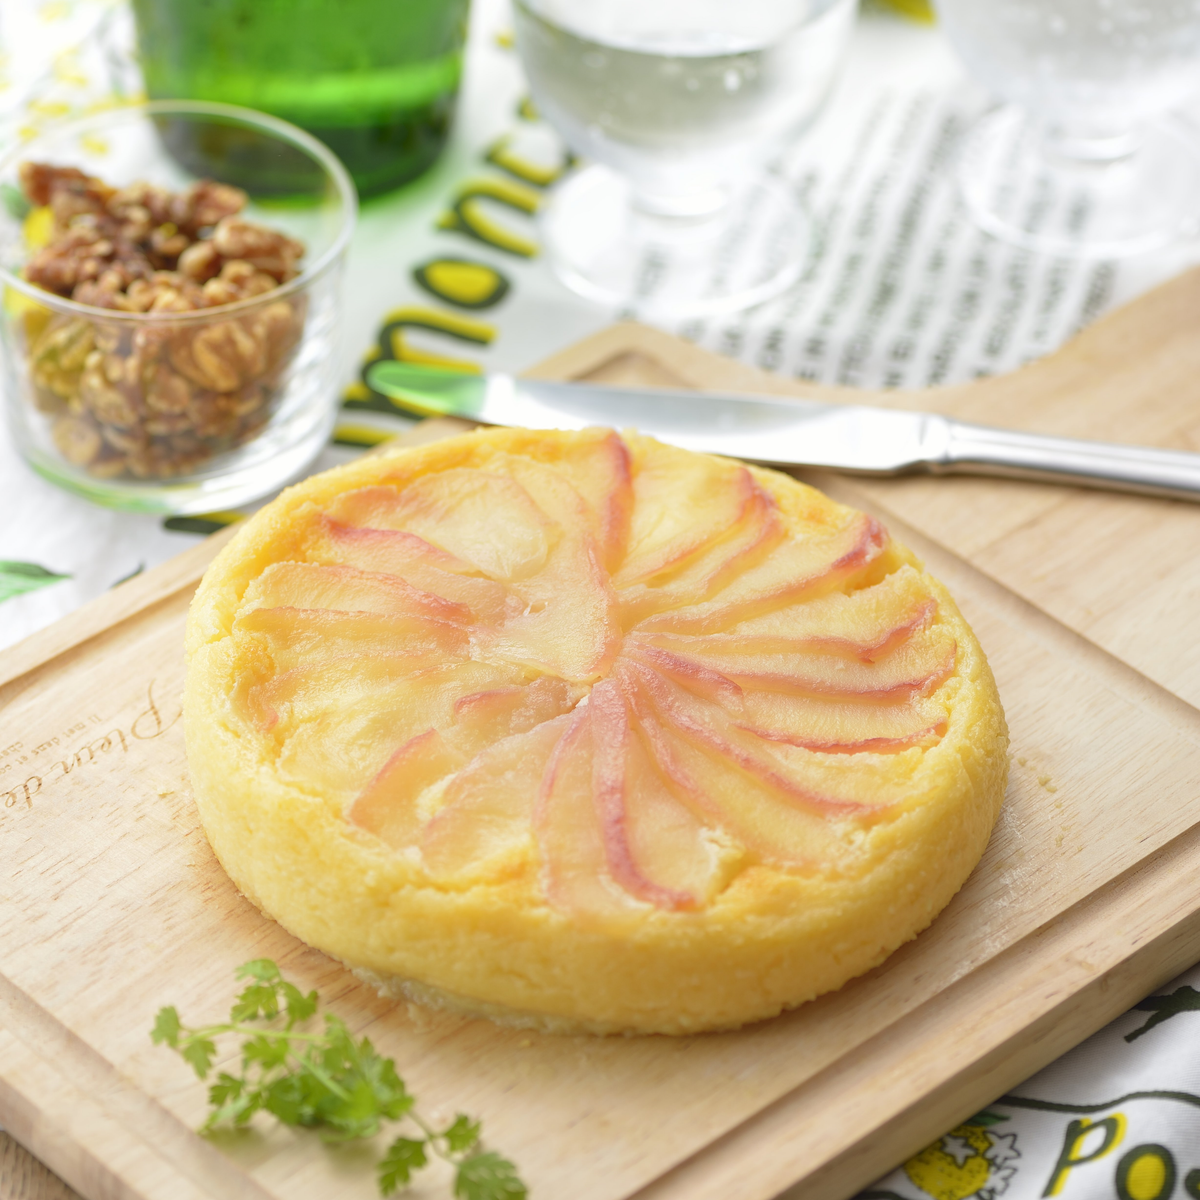 パティシエ直伝お手軽スイーツレシピ『りんごのチーズケーキ』